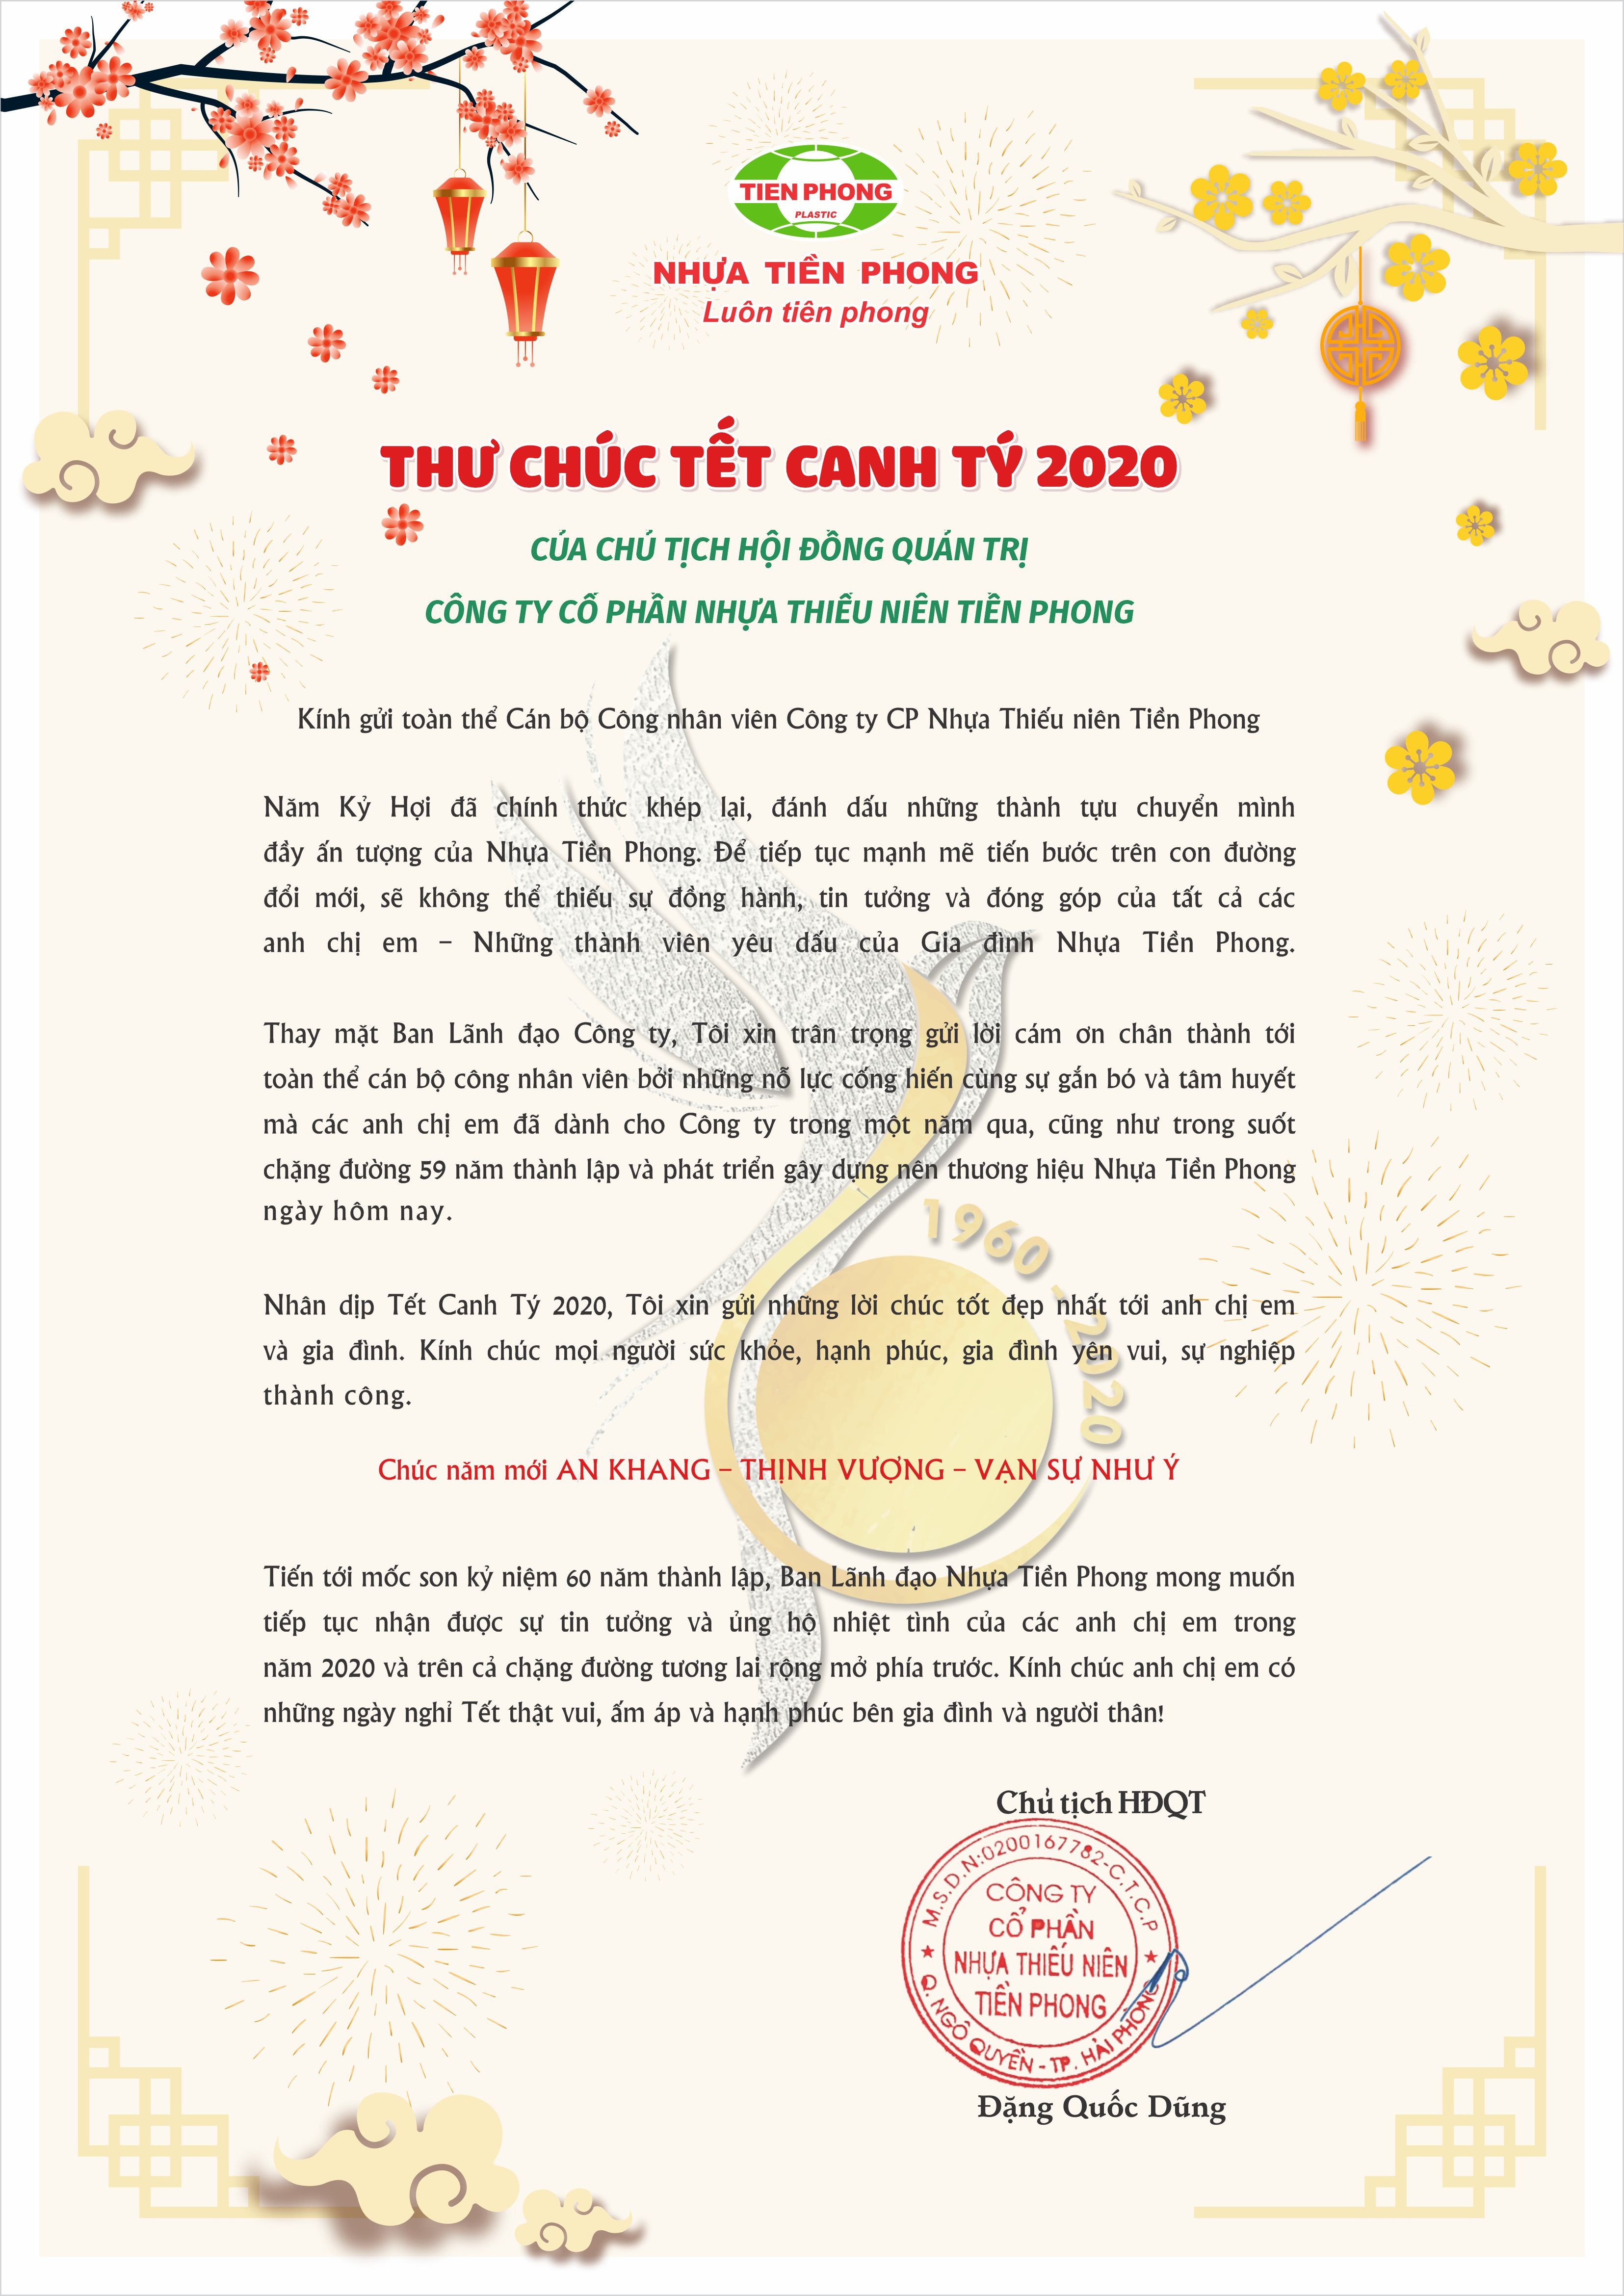 Thư chúc Tết Canh Tý 2020 gửi CBCNV Nhựa Tiền Phong